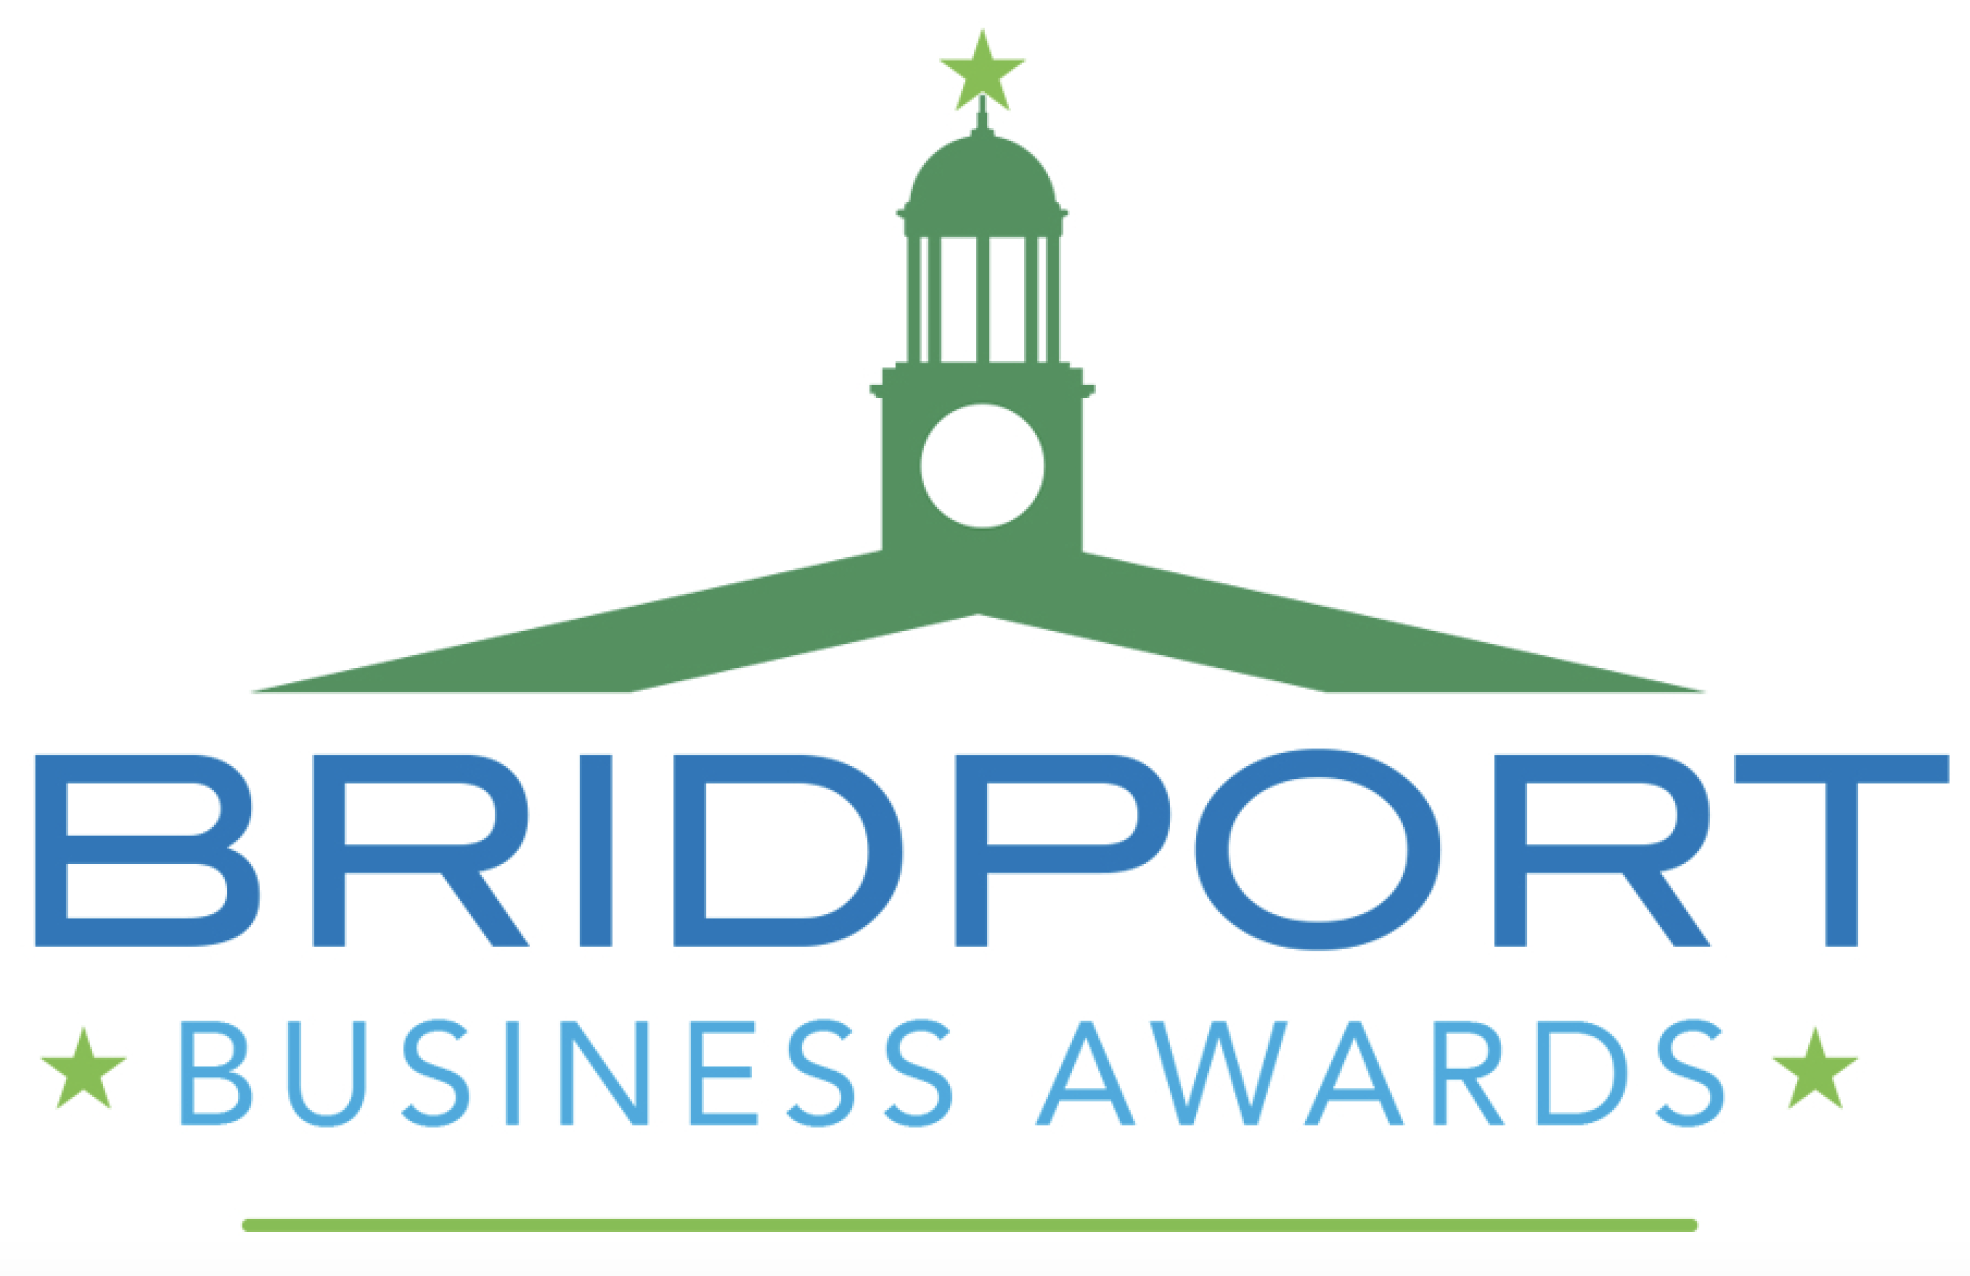 Bridport Business Awards Update